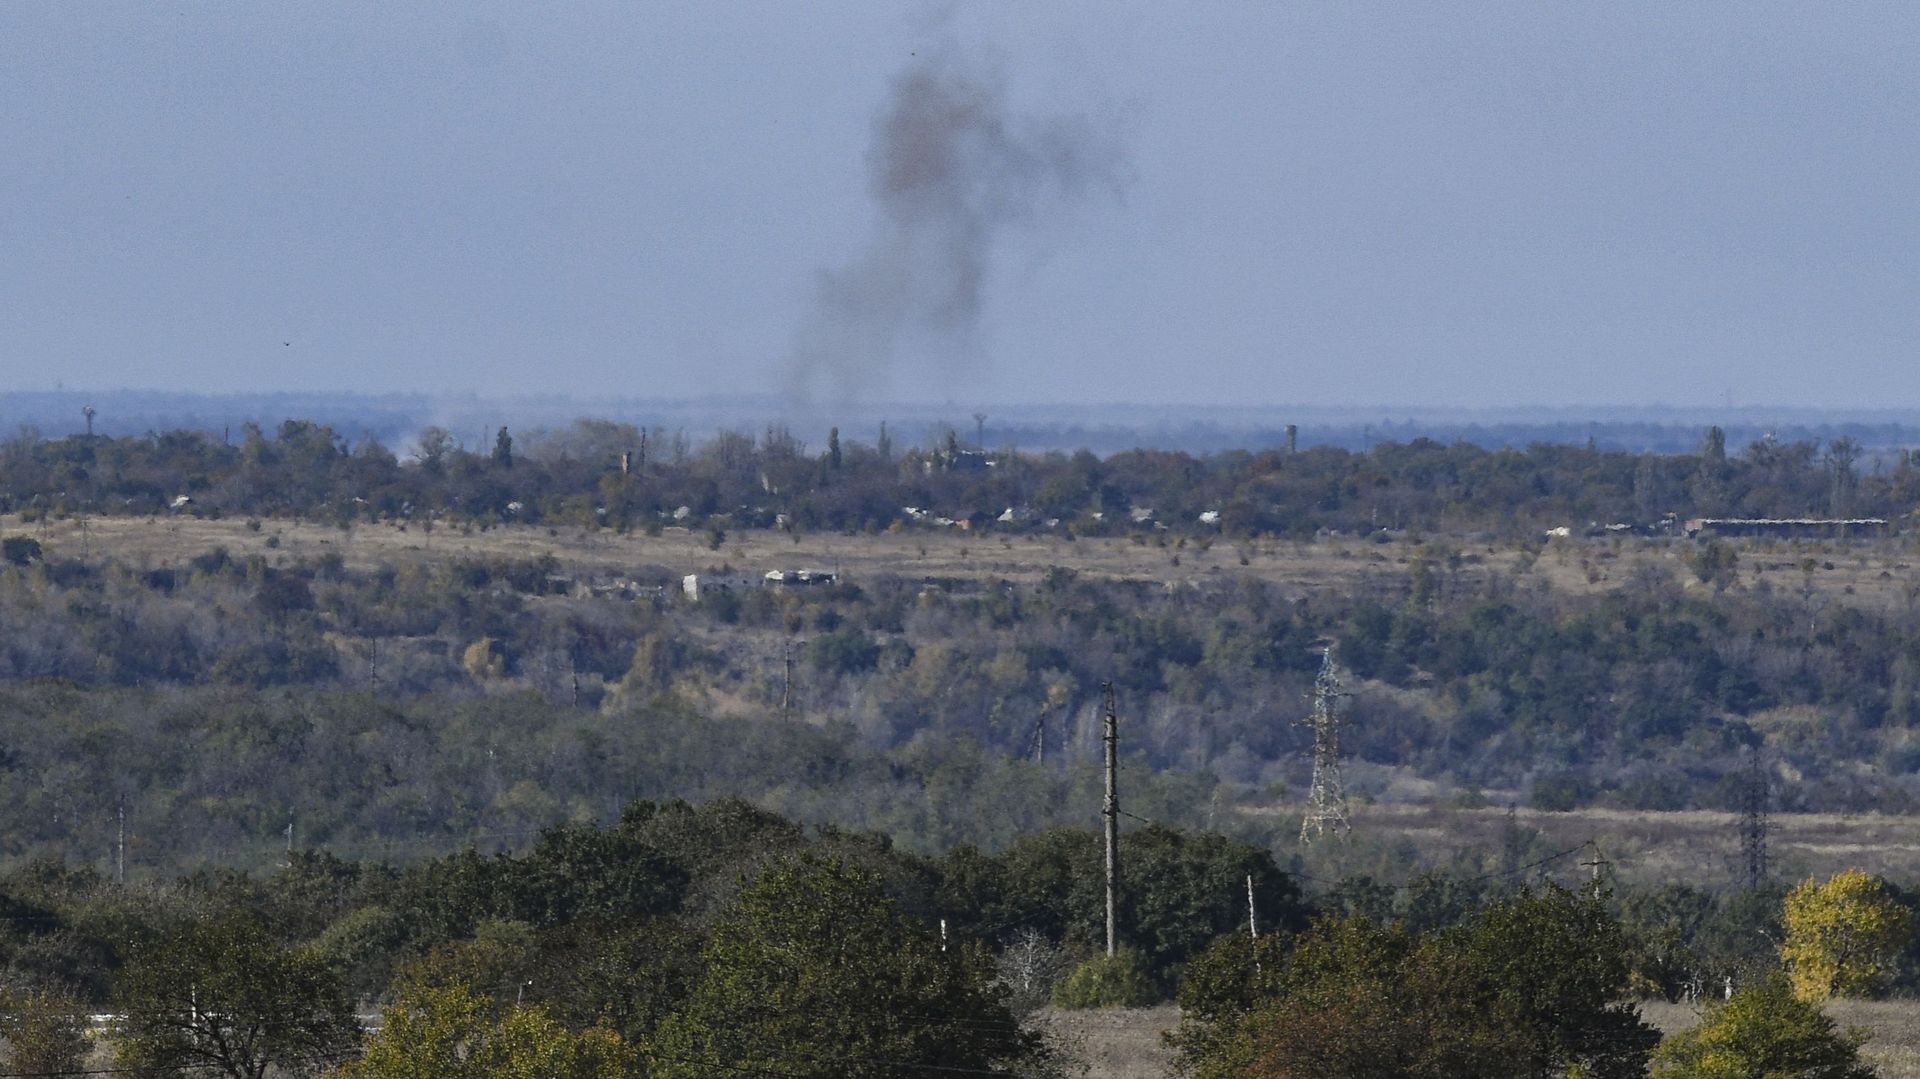 Guerra in Ucraina: perché le forze russe stanno intensificando i loro attacchi contro la piccola città industriale di Avdiivka?